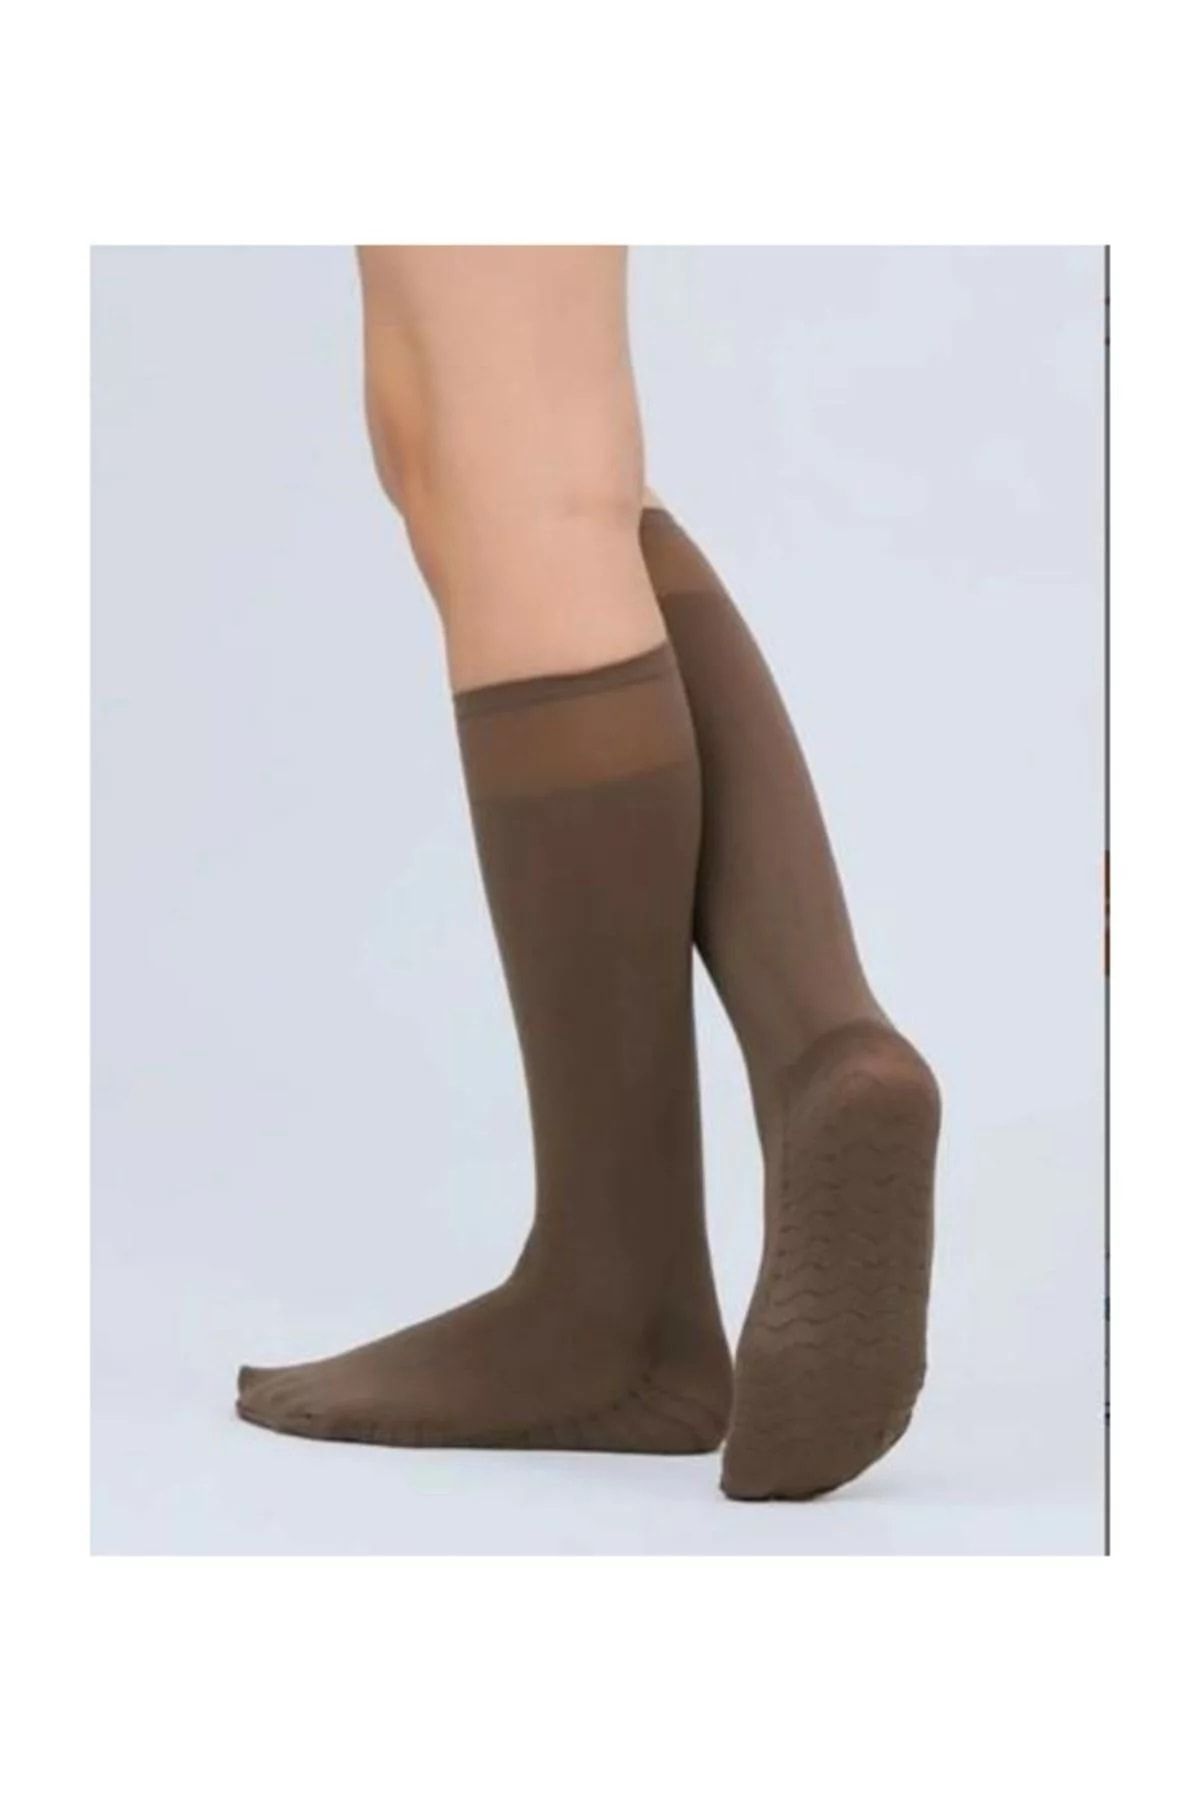 Evsay Dore Masaj Çorabı Dizaltı Kalın Petek Dokulu Kadın Çorap Kahverengi